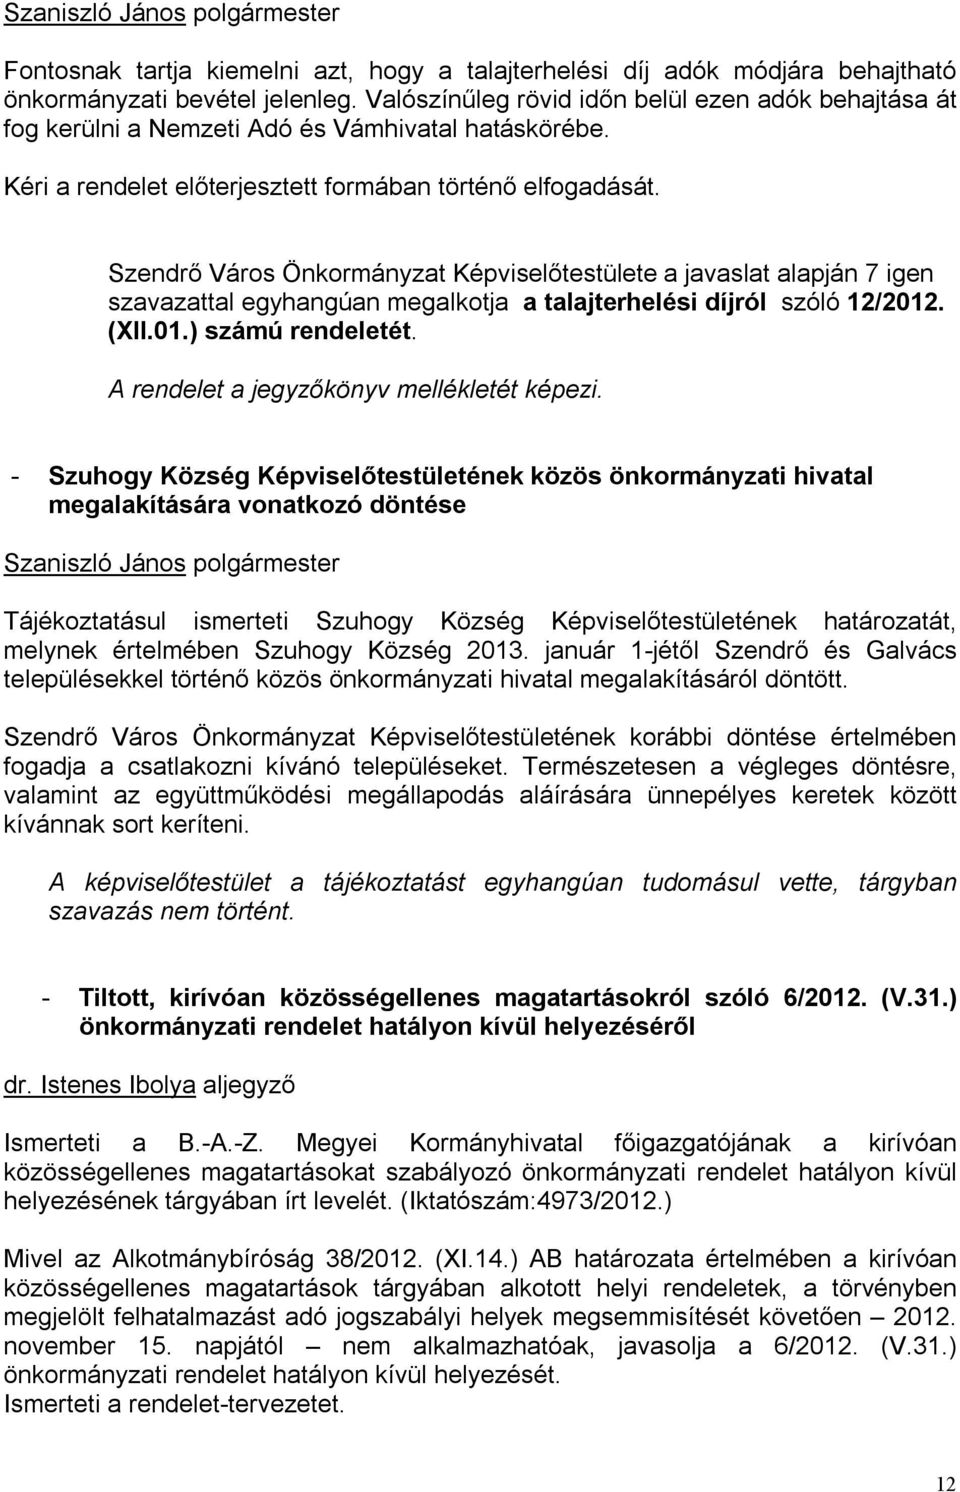 Szendrő Város Önkormányzat Képviselőtestülete a javaslat alapján 7 igen szavazattal egyhangúan megalkotja a talajterhelési díjról szóló 12/2012. (XII.01.) számú rendeletét.